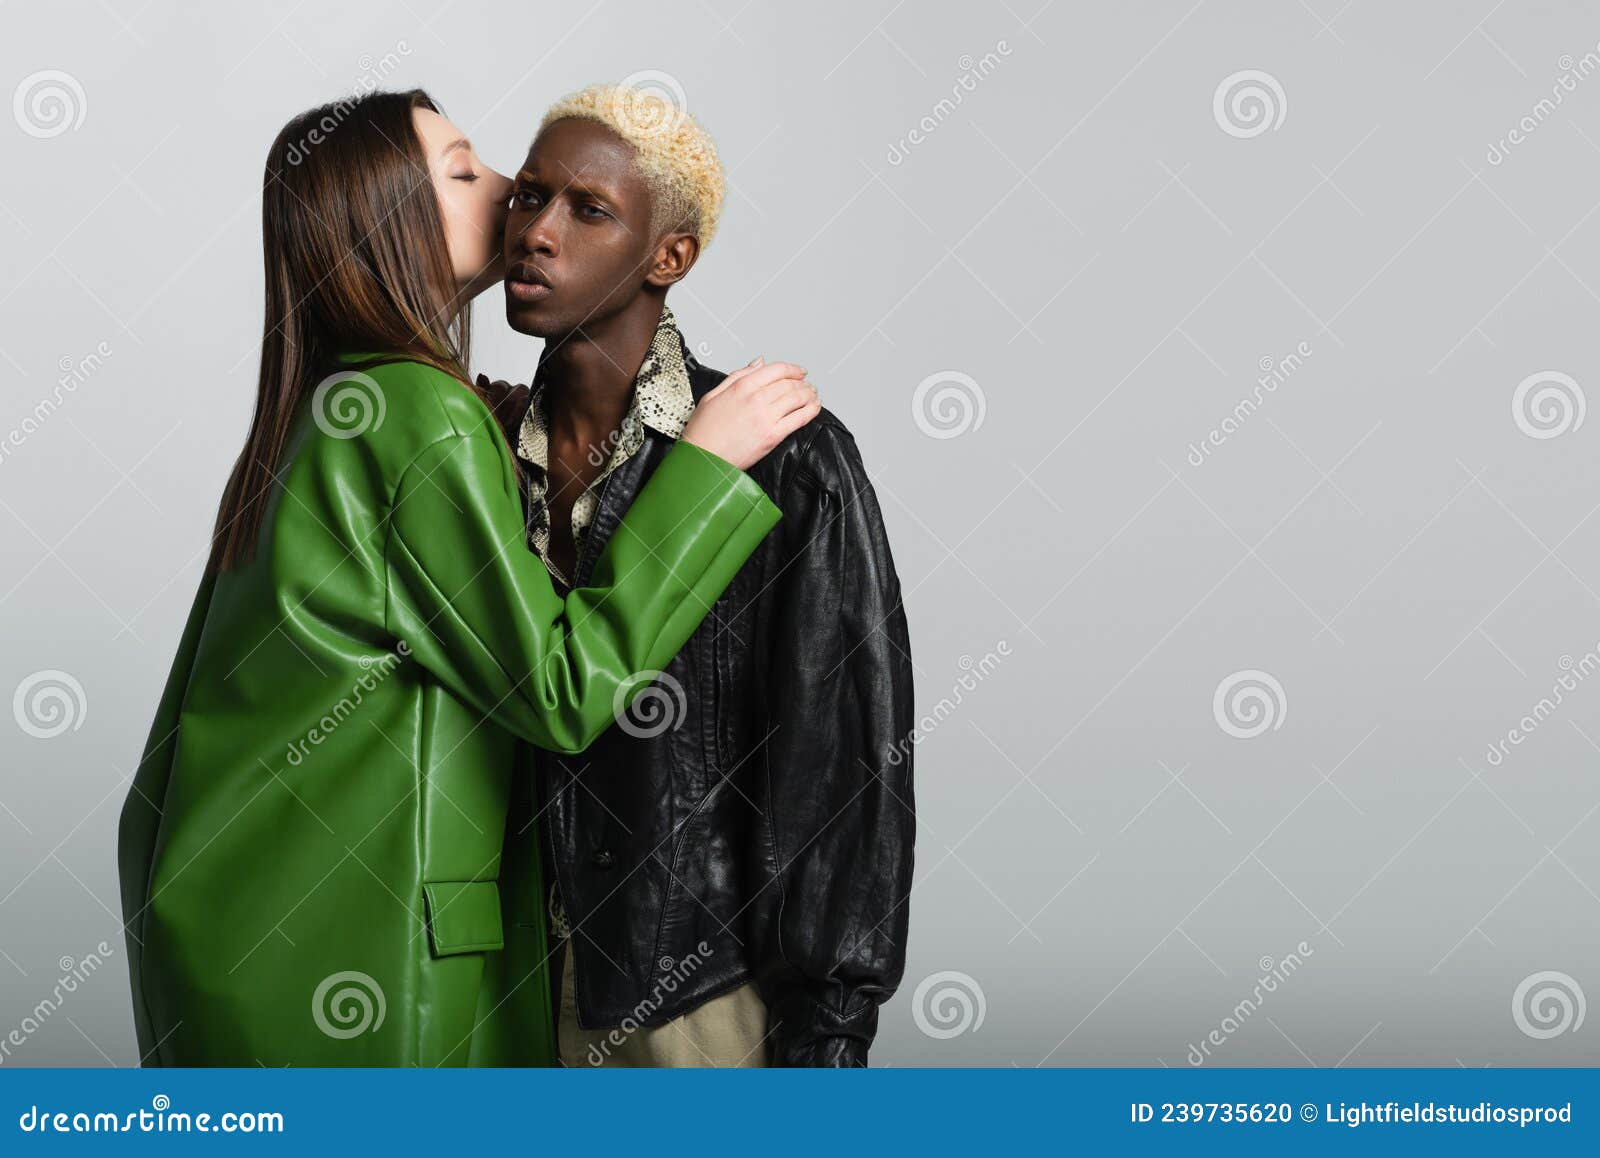 брюнетка в стильном пиджаке целуется Стоковое Фото - изображениенасчитывающей модно, женщины: 239735620